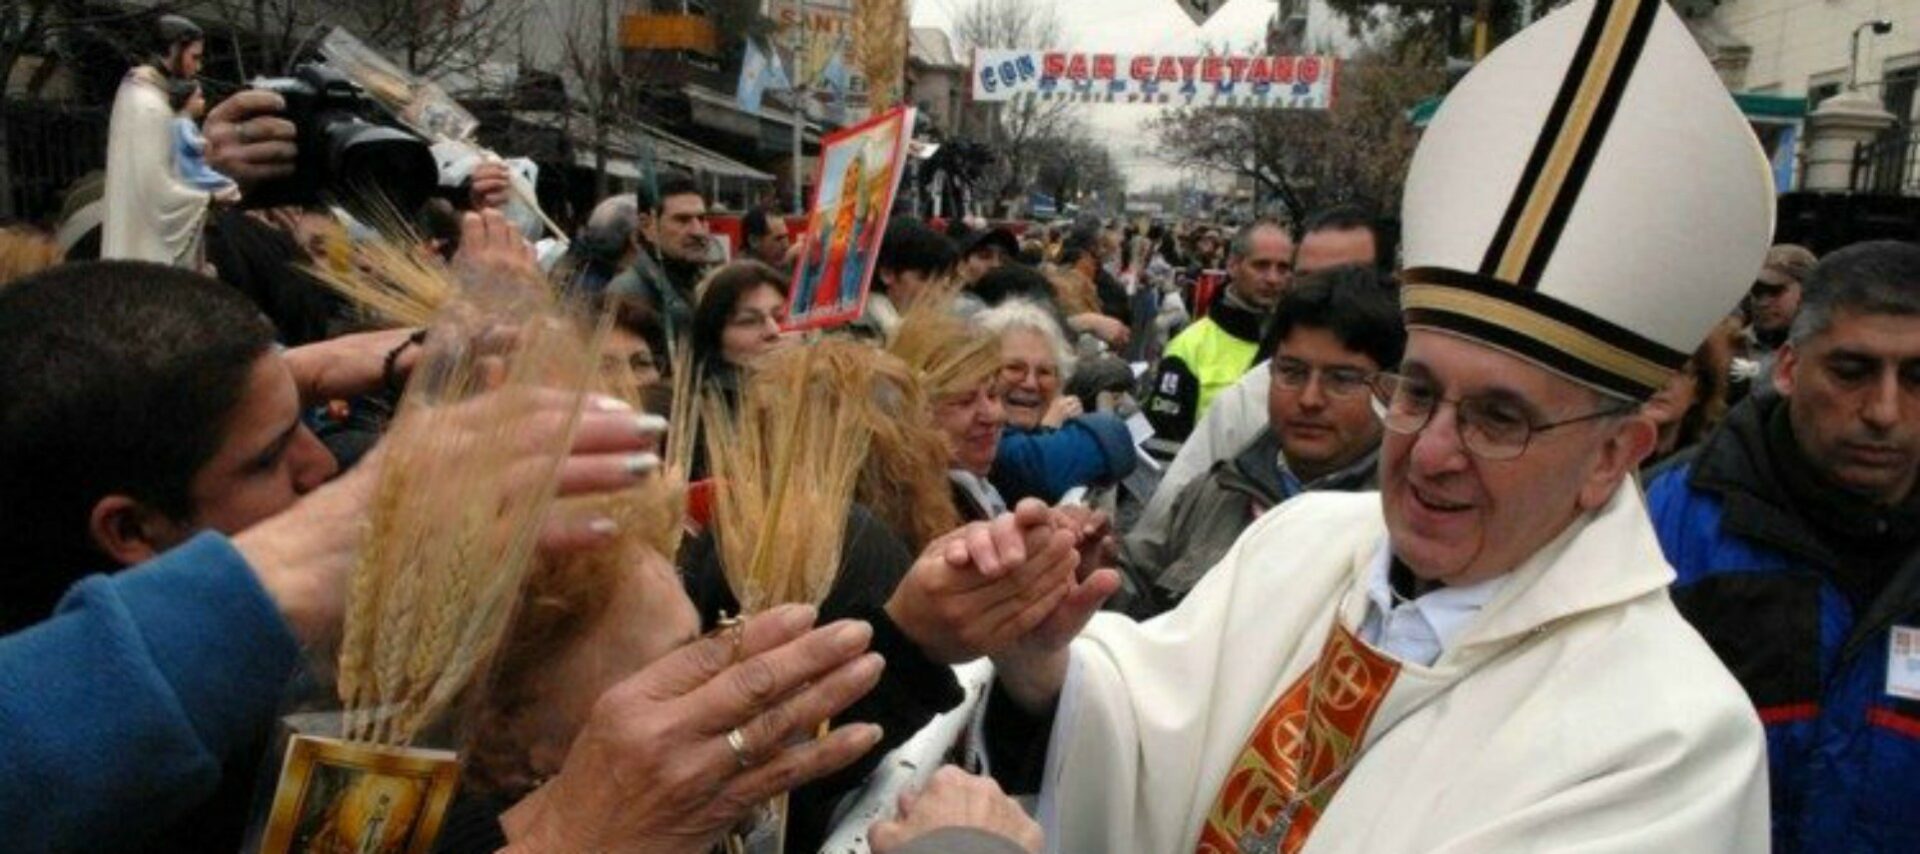 Jorge Mario Bergoglio à l'époque où il était archevêque de Buenos Aires | © Vatican Media